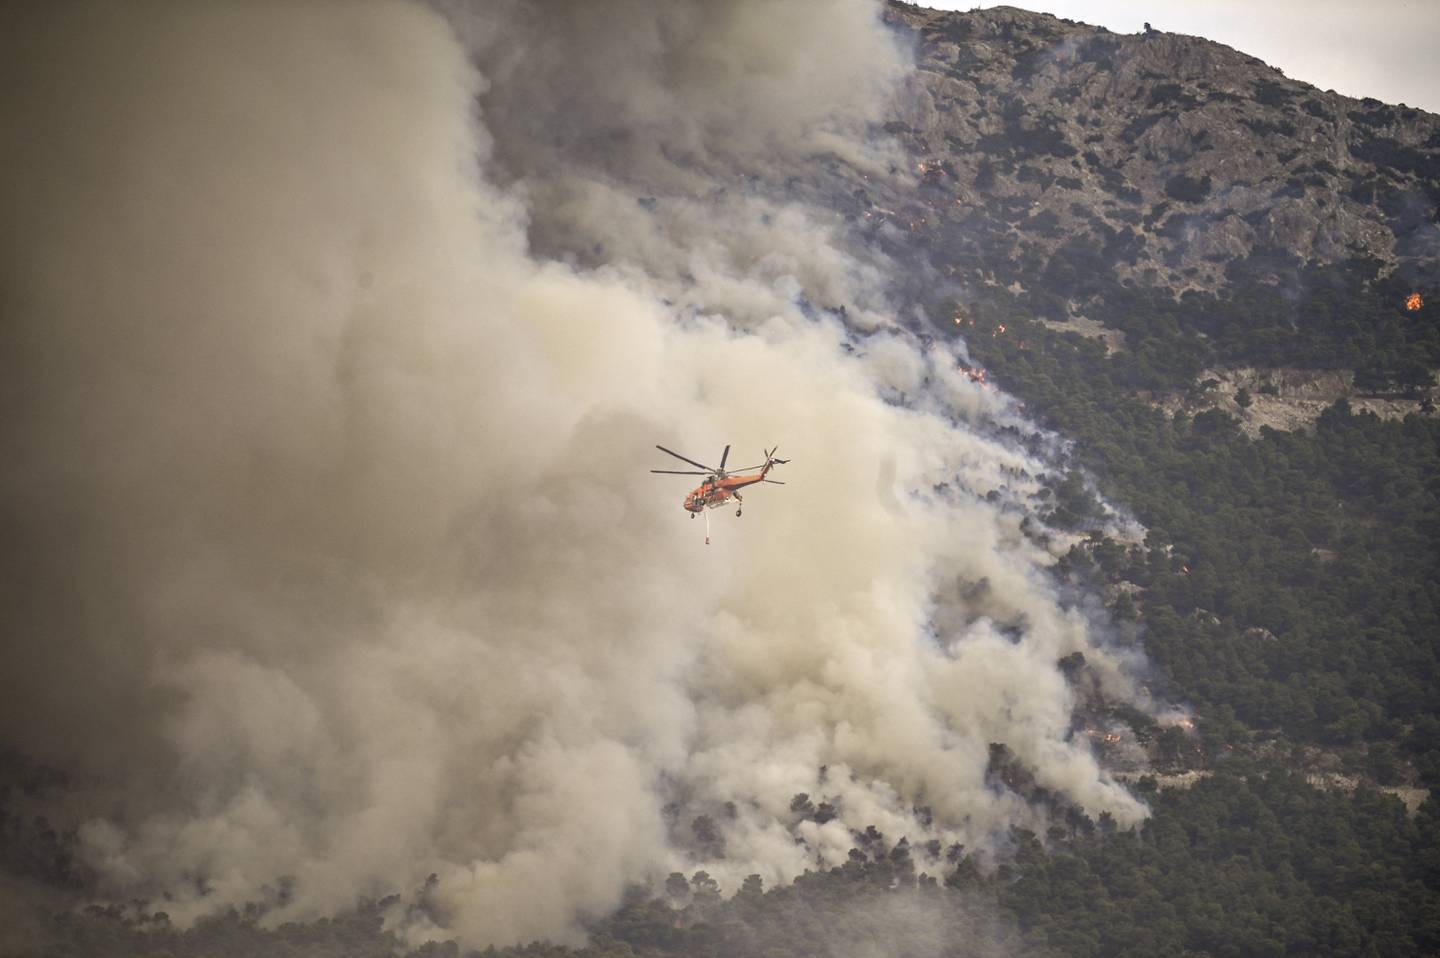 Una grúa aérea Sikorsky S-64 sobrevuela un incendio forestal que se propaga cerca de Archanes, al norte de Atenas.